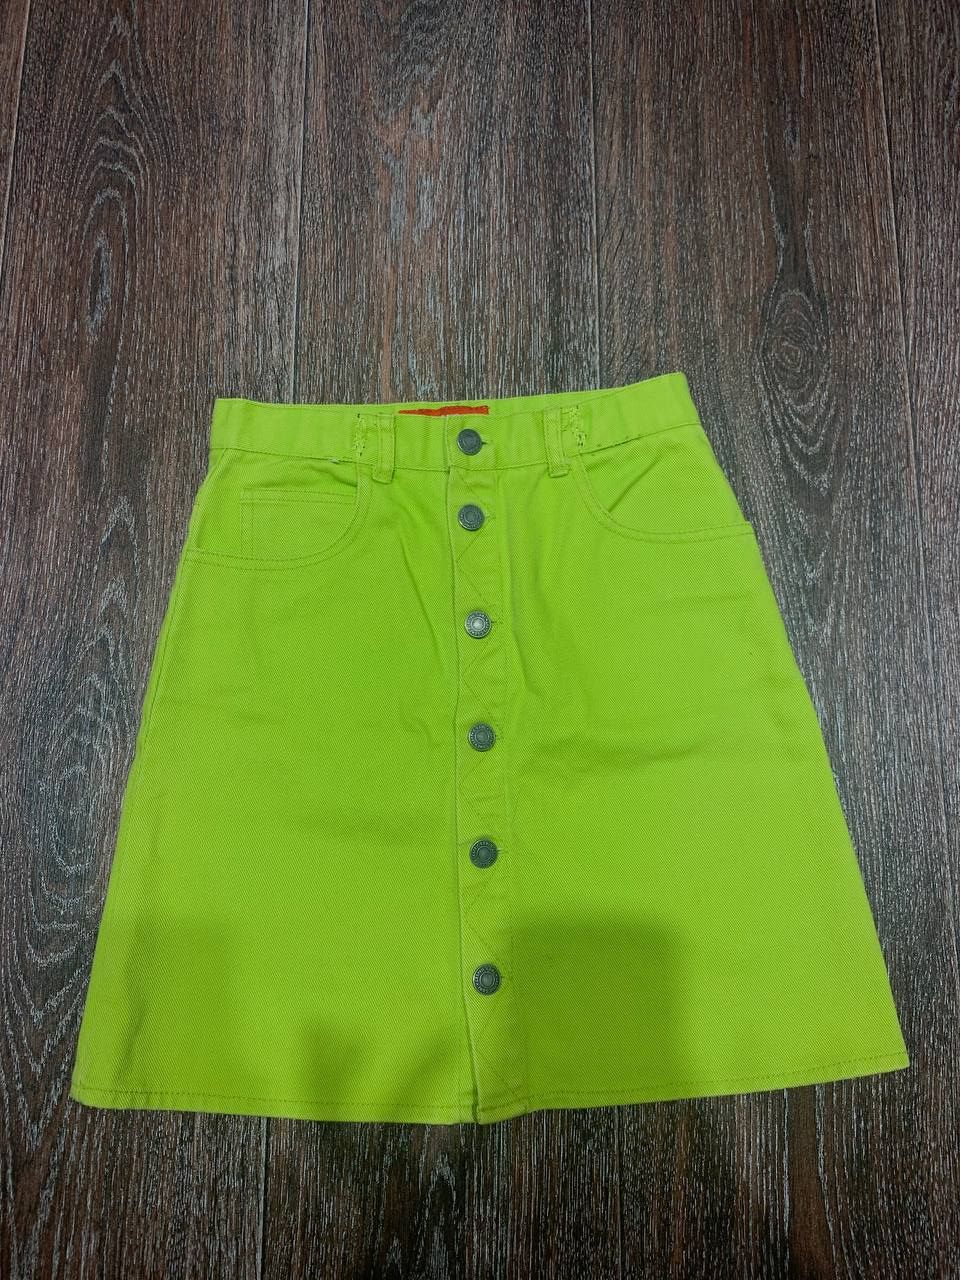 Джинсовая юбка лаймового цвета, размер XS